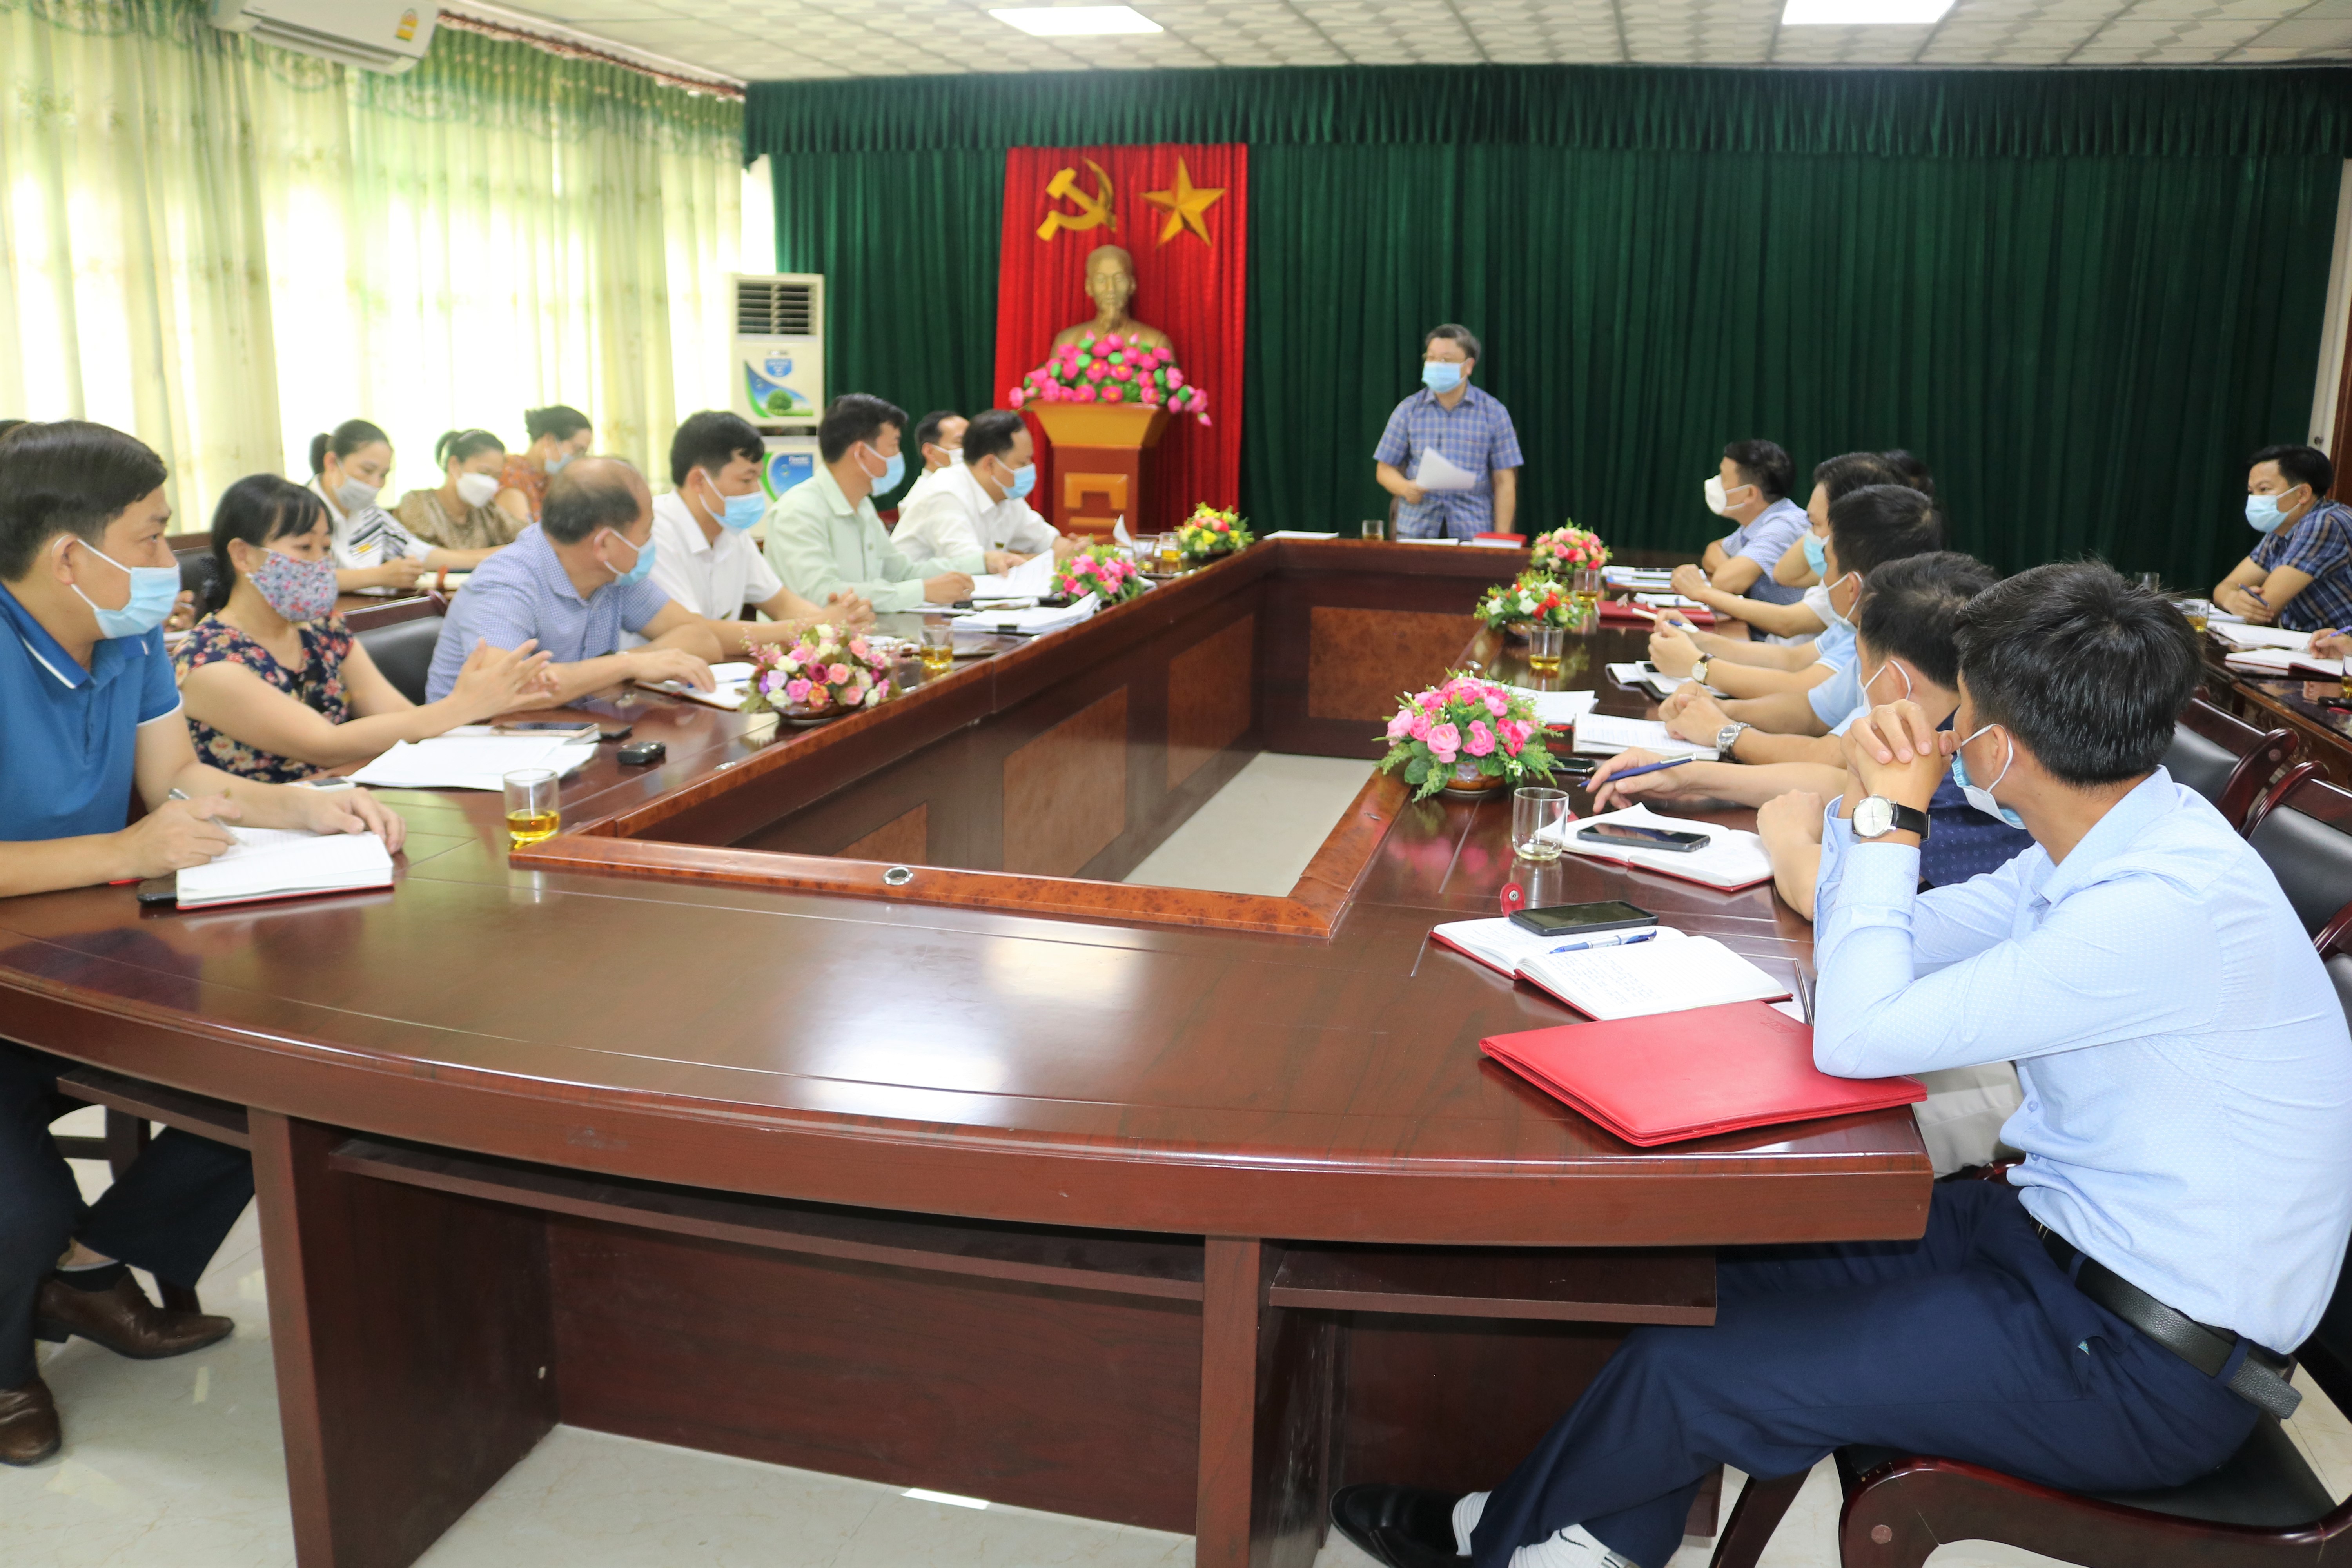 Trường Cao đẳng Việt – Đức Nghệ An tổ chức Hội nghị thực hiện quy trình thành lập Hội đồng trường nhiệm kỳ 2019 - 2024